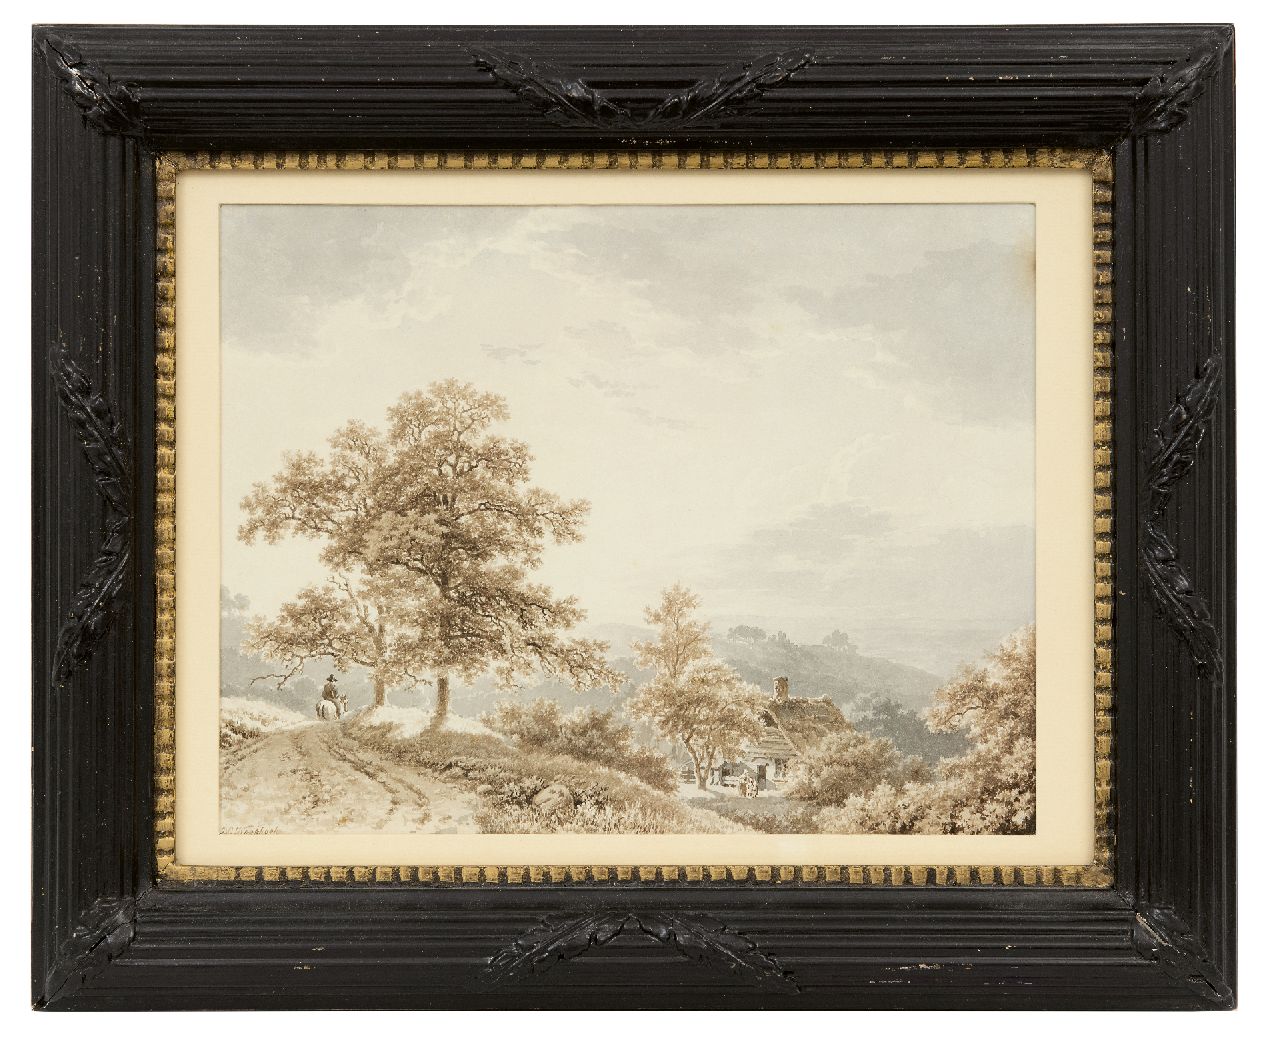 Koekkoek B.C.  | Barend Cornelis Koekkoek, Reisender Reiter in Hügellandschaft, Sepia und gewaschene Tinte auf Papier 21,2 x 27,4 cm, Unterzeichnet l.u. und zu datieren um 1833-1840